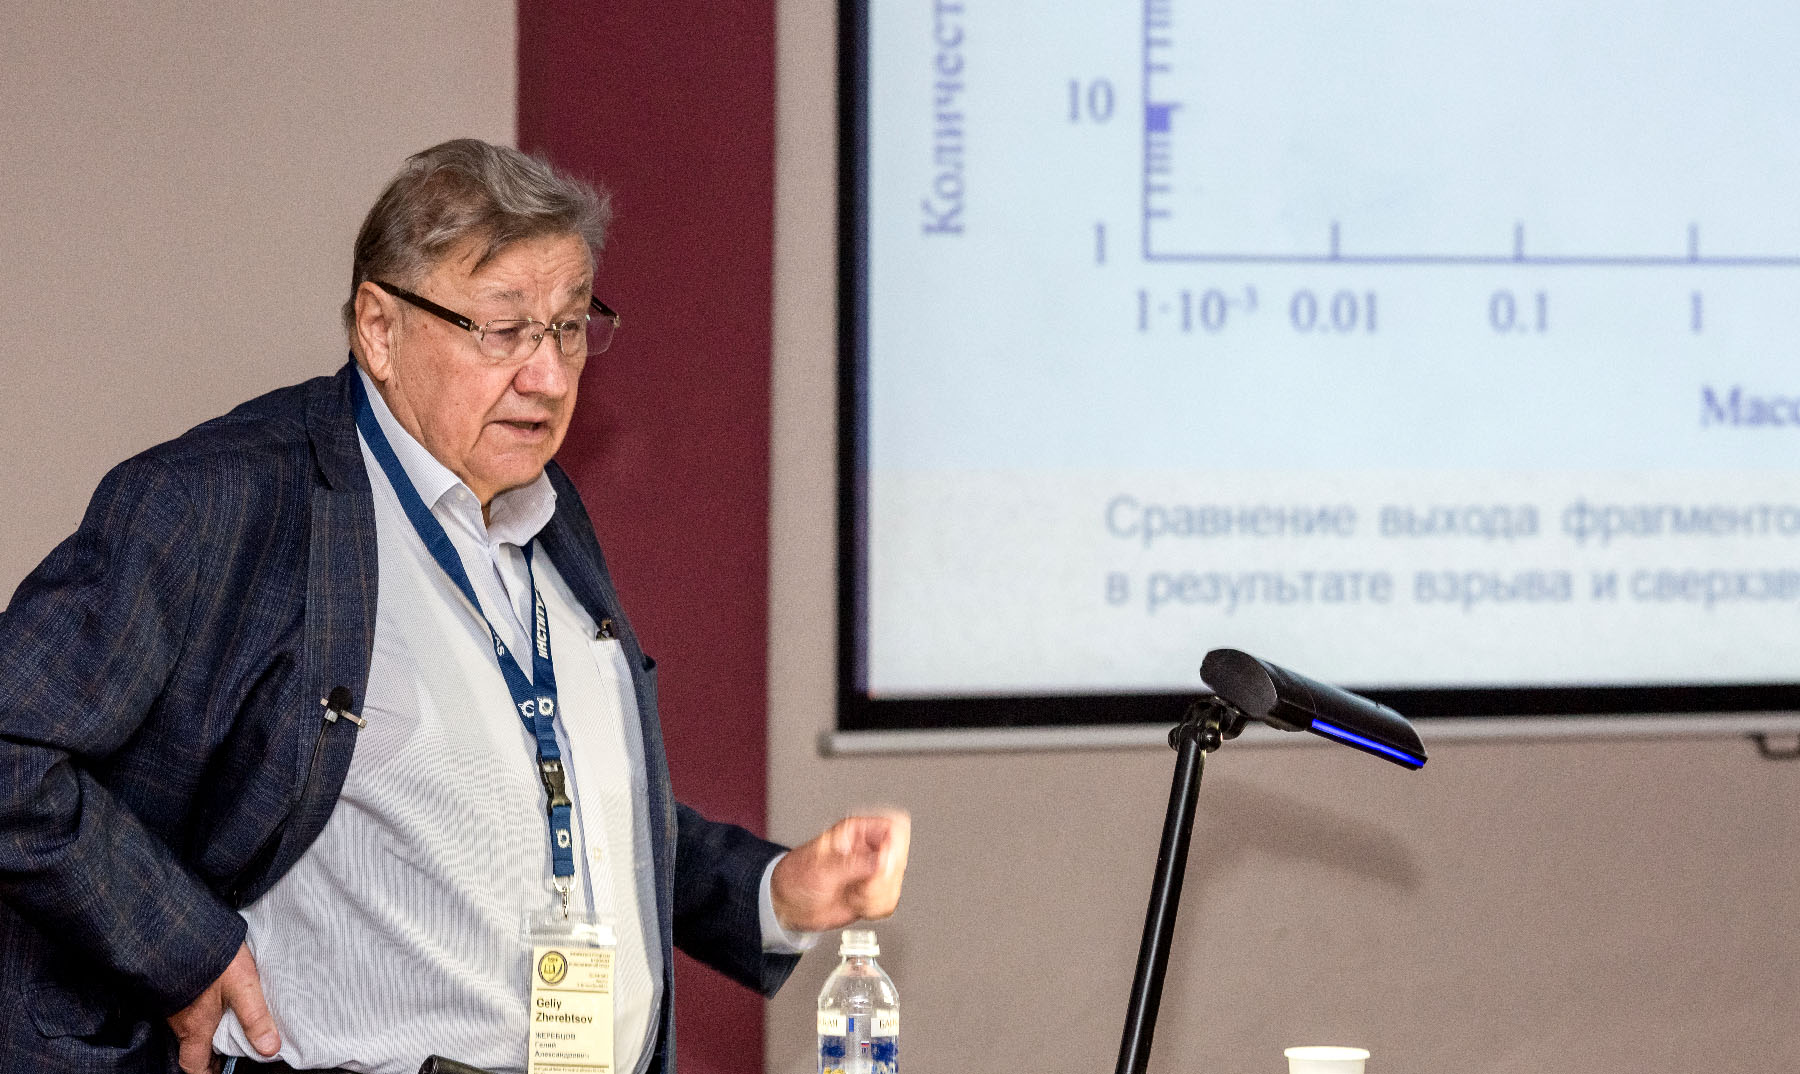 Гелий Александрович Жеребцов, академик РАН, ректор международной Байкальской молодежной научной школы по фундаментальной физике